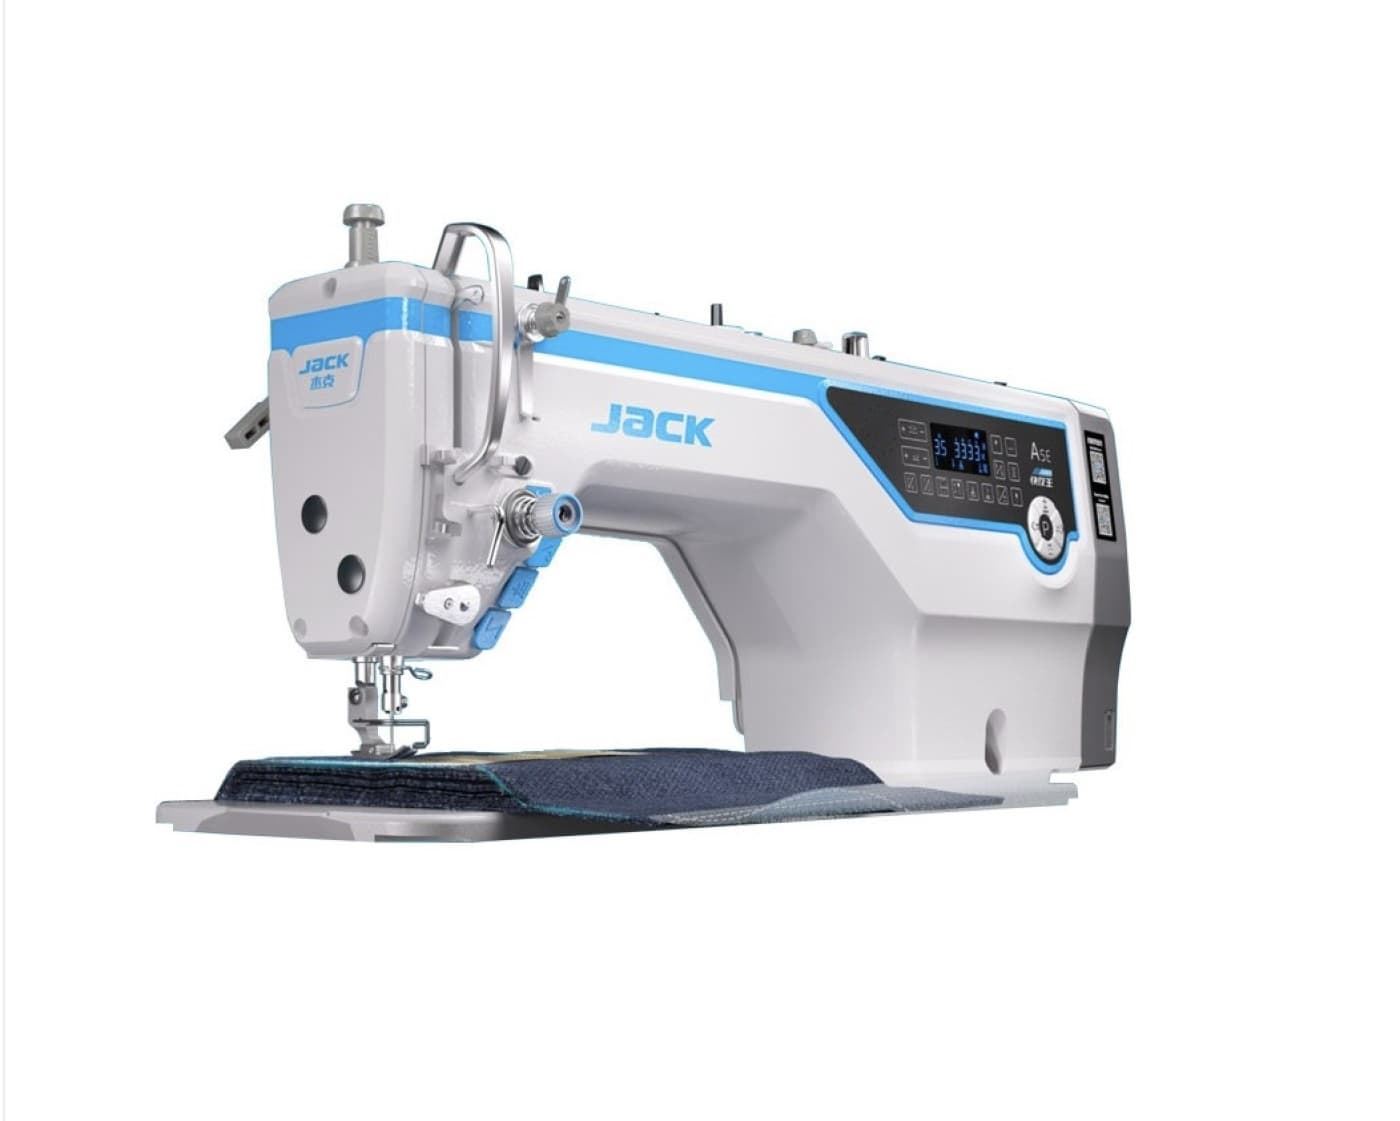 JACK A5E-AMH CON INTELIGENCIA ARTIFICIAL - Máquina de coser industrial puntada recta - Imagen 8